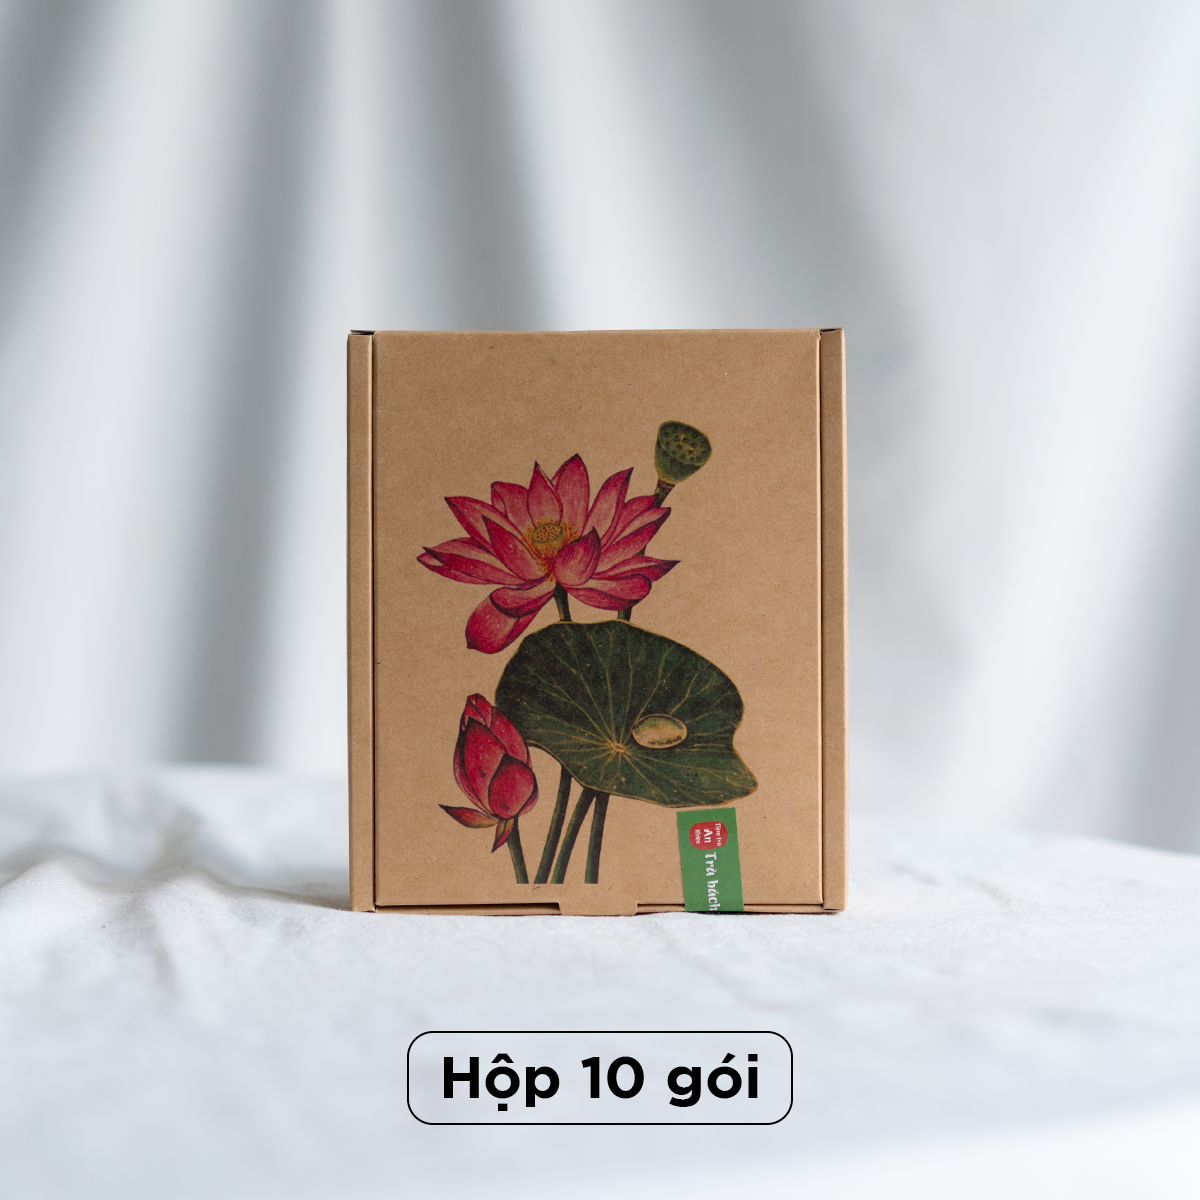 hop 10